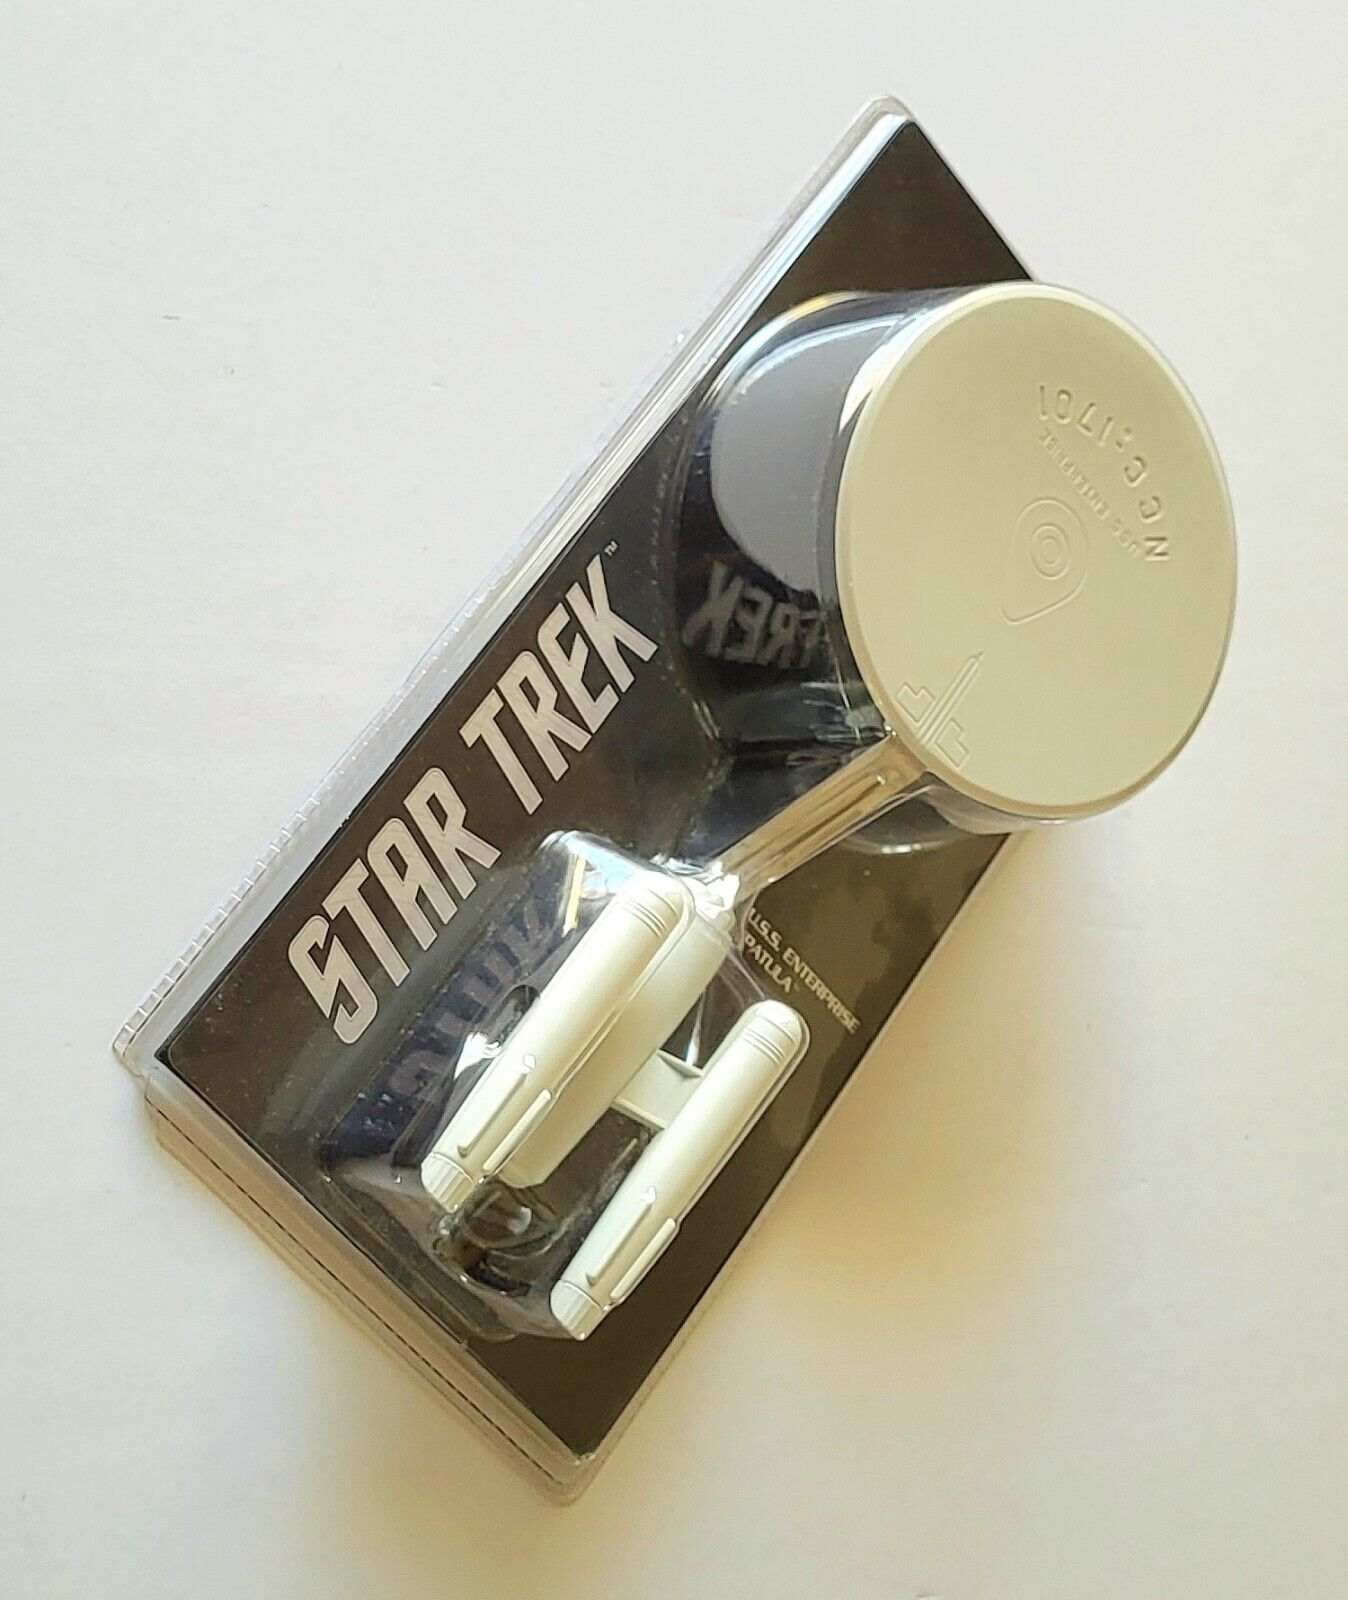 Star Trek U.S.S. Enterprise kitchen spatula sealed, From 2012, Trekkie Gift LOL